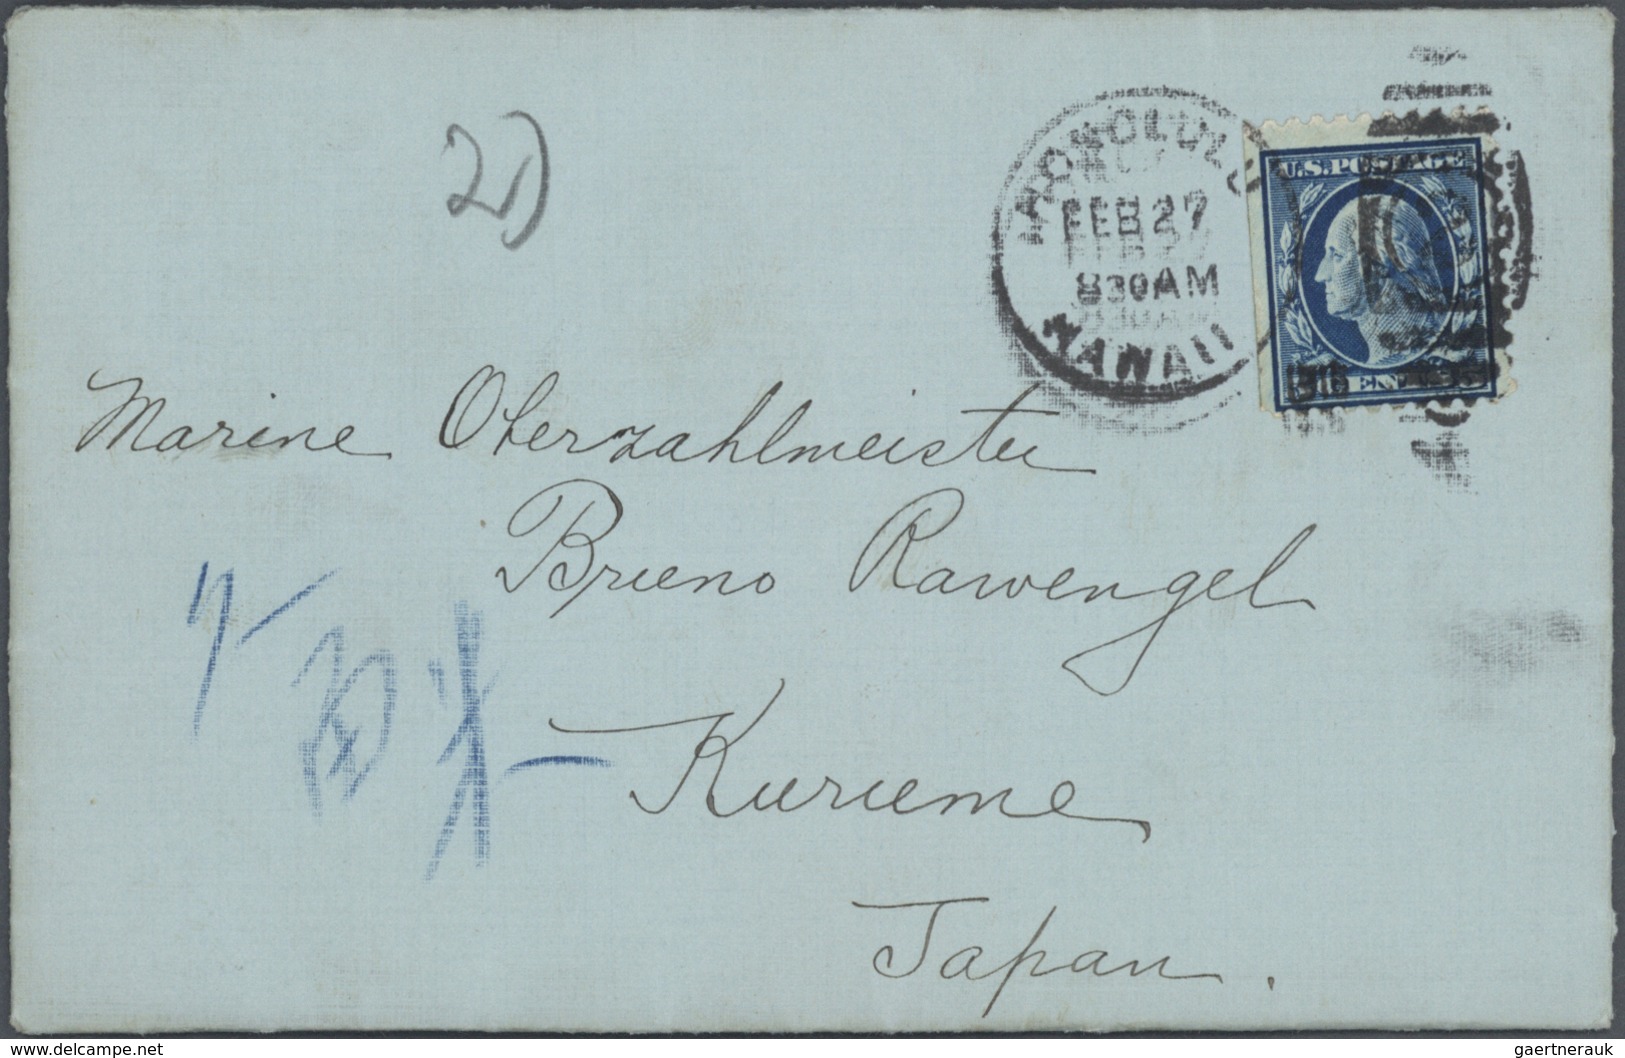 Lagerpost Tsingtau: Kurume, 1915/19, the Bruno Rawengel (rank: Marine Oberzahlmeister) correspondenc